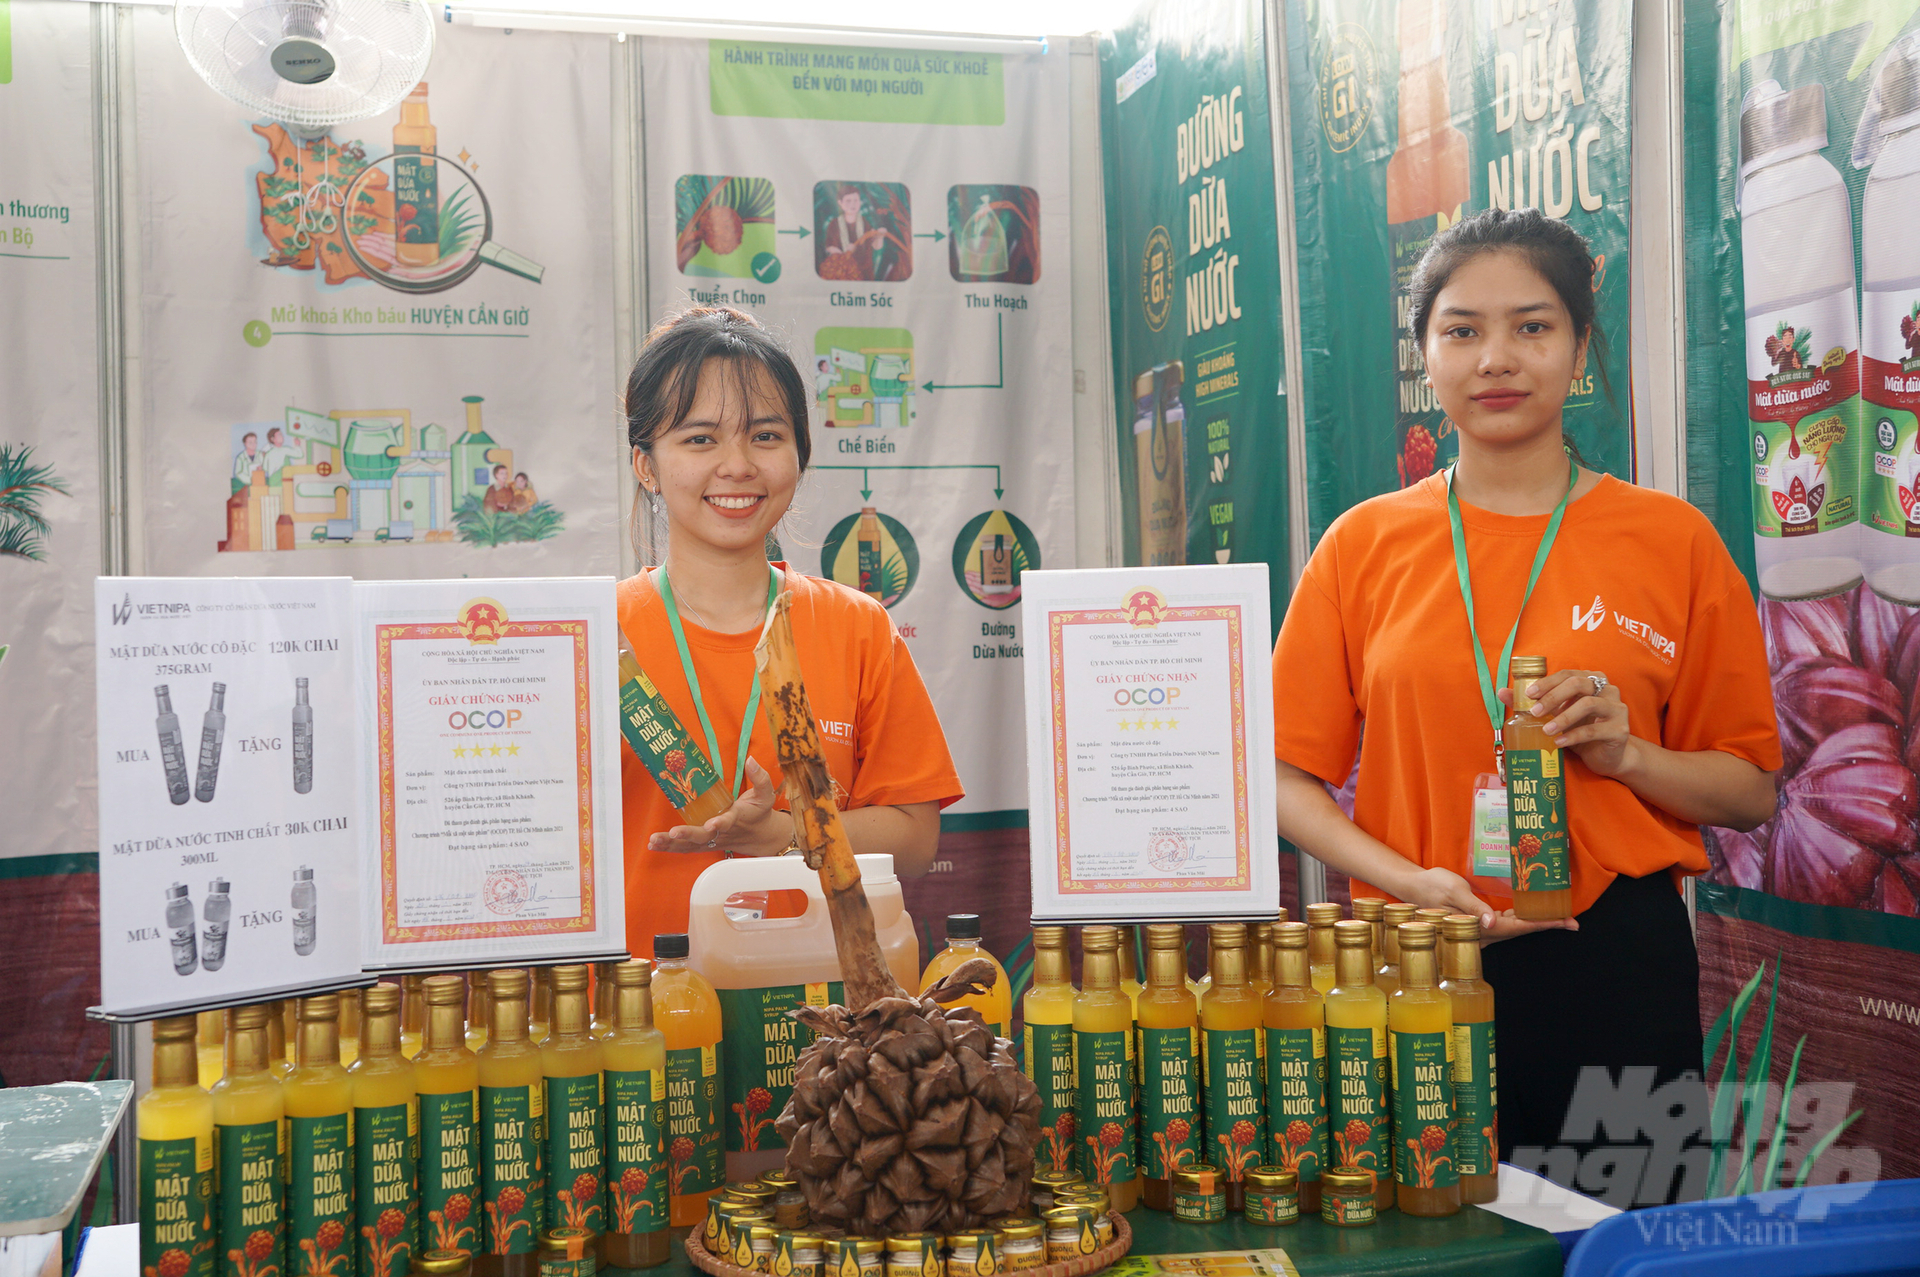 Sản phẩm OCOP 4 sao mật dừa nước nguyên chất và mật dừa nước cô đặc của Công ty TNHH Phát triển dừa nước Việt Nam (huyện Cần Giờ) tham gia giới thiệu, trưng bày tại nhiều hội chợ, triển lãm. Ảnh: Nguyễn Thủy.